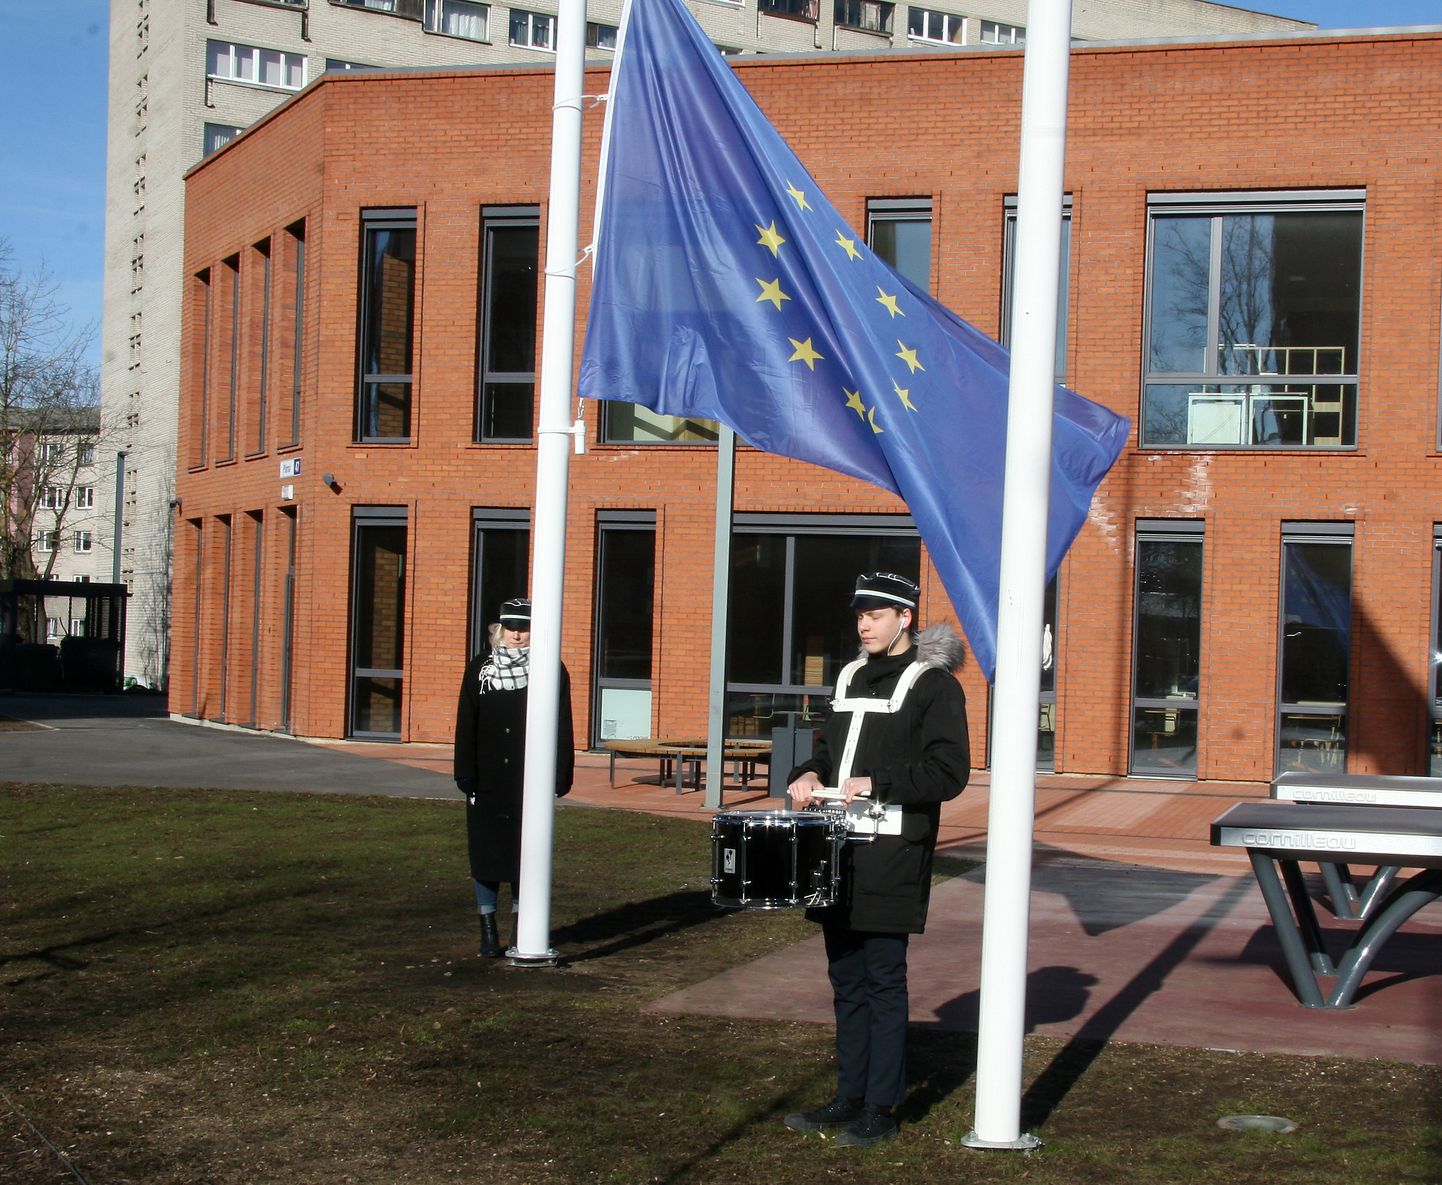 Флаг Евросоюза подняла под барабанную дробь президент ученического представительства гимназии Элизабет Вери.